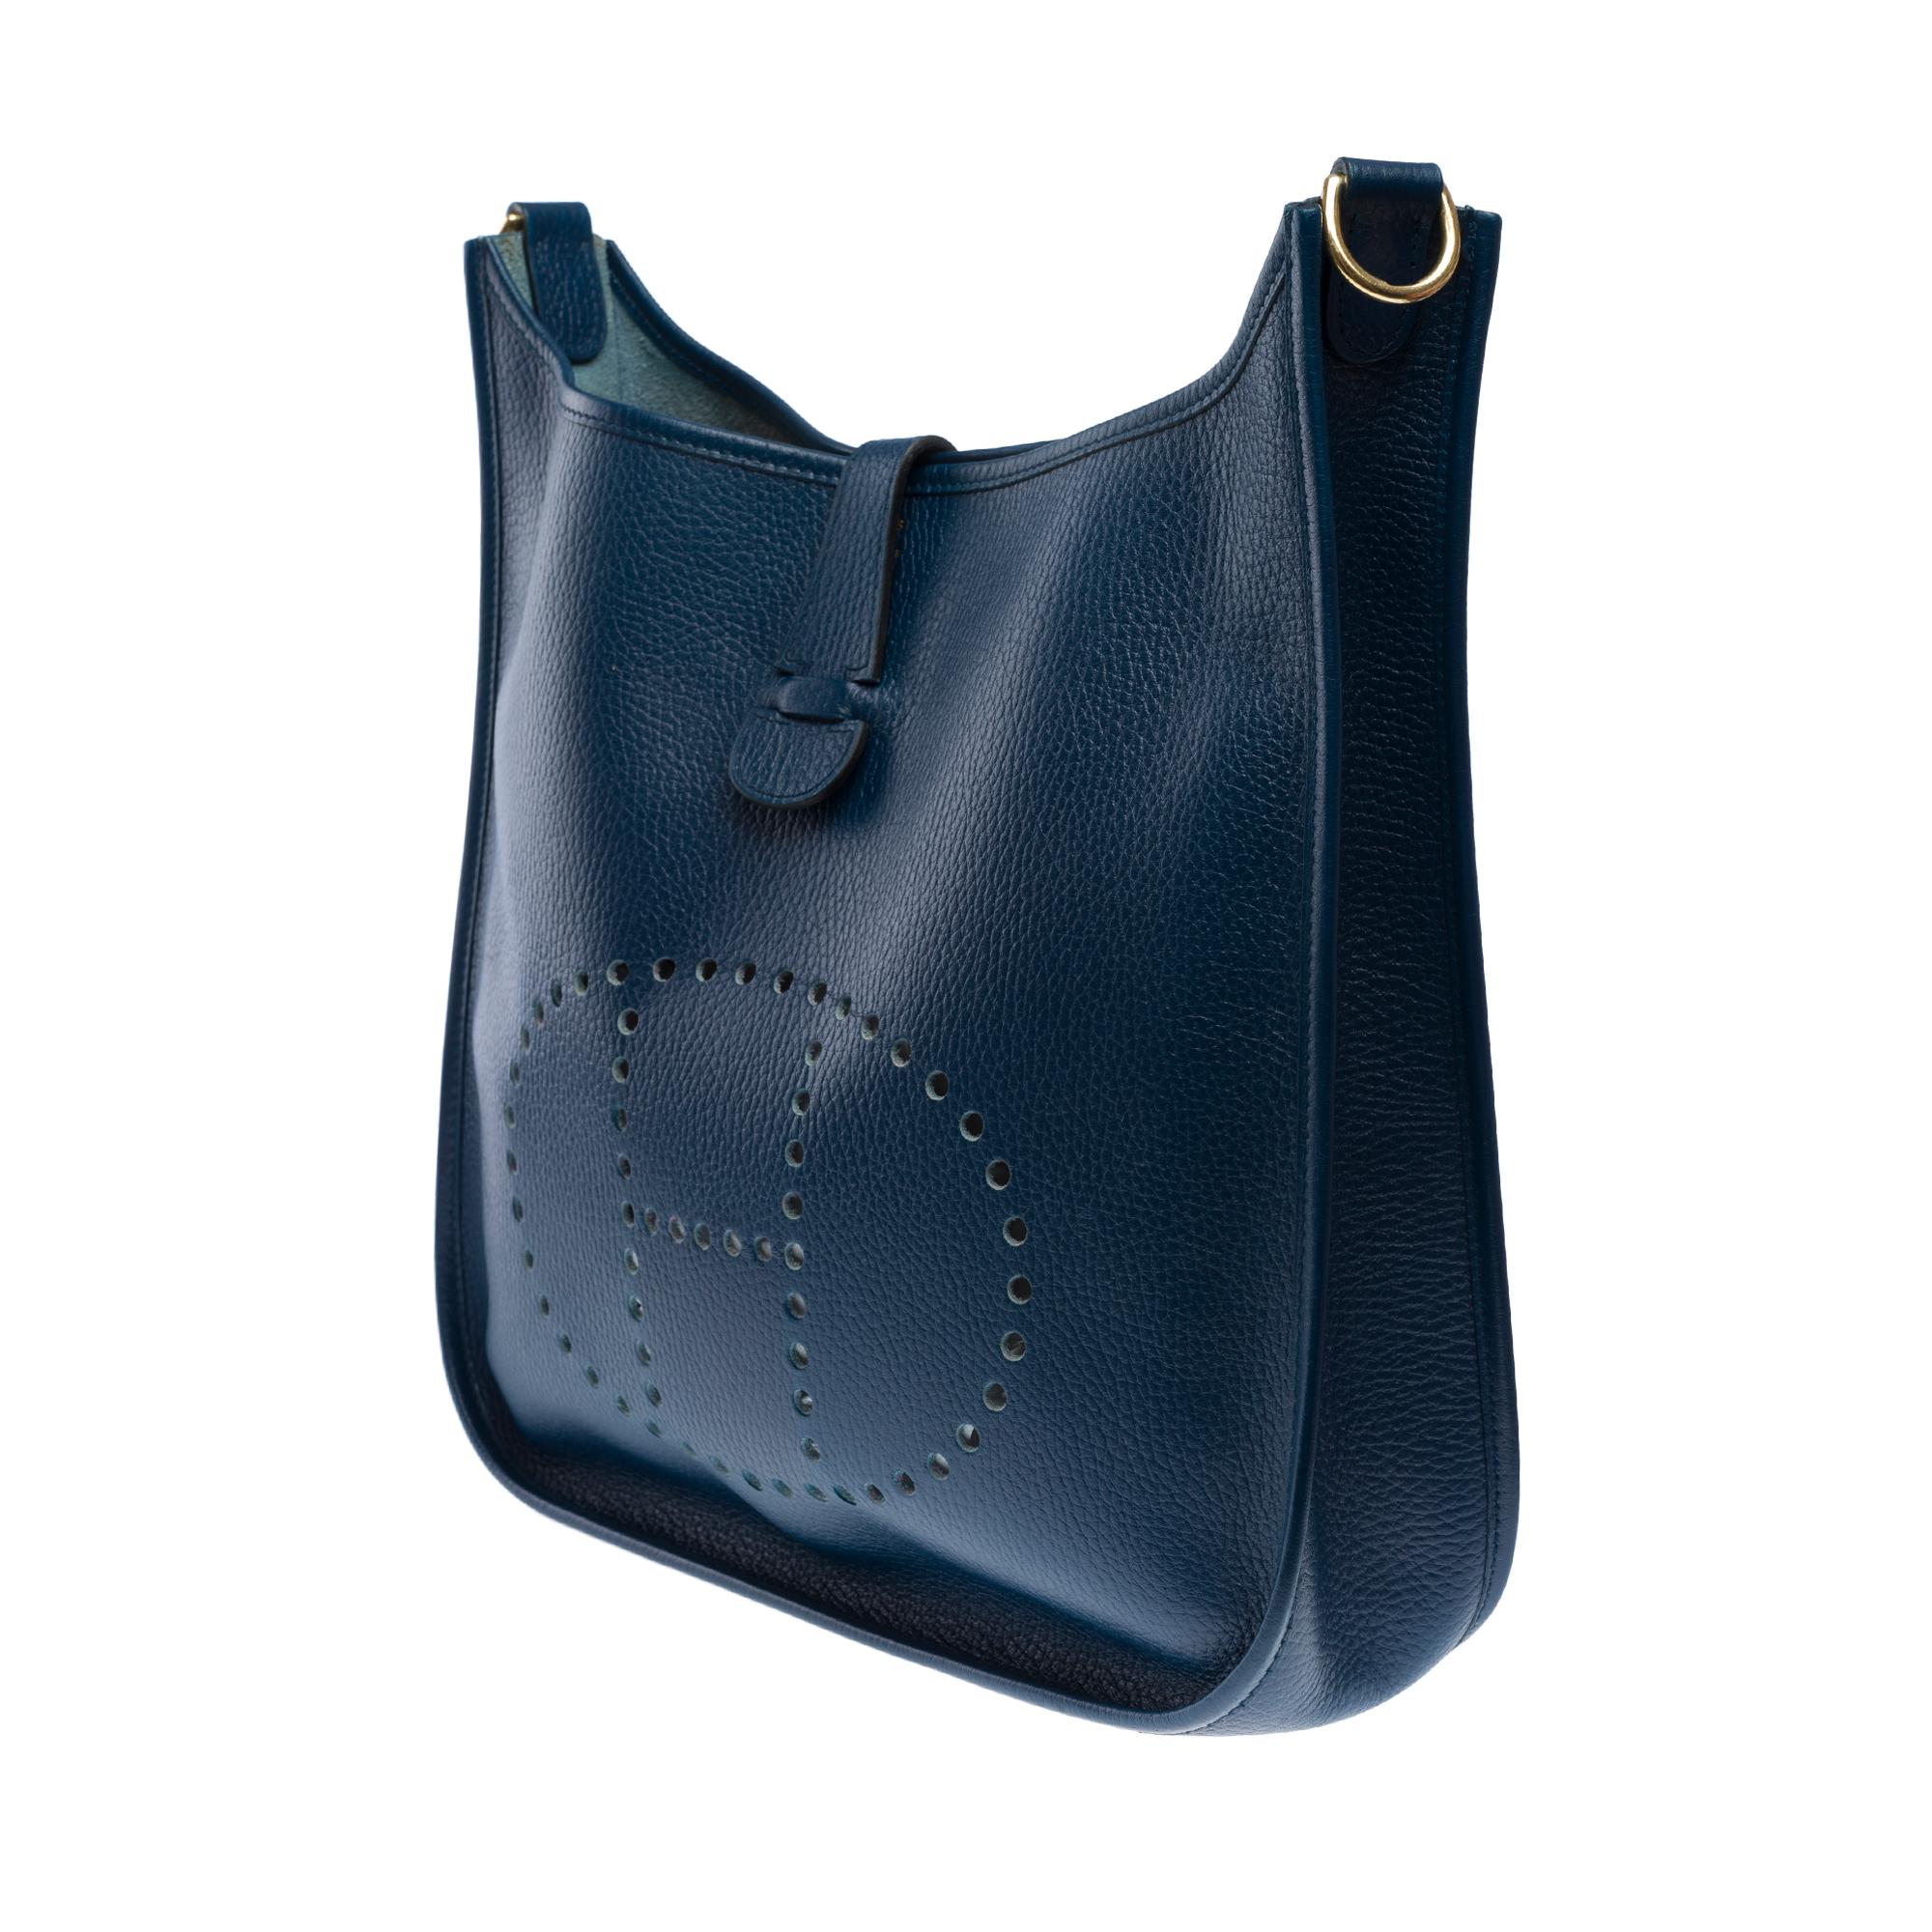 Hermès Evelyne GM  shoulder bag in Navy Blue Taurillon Clemence leather, GHW 2